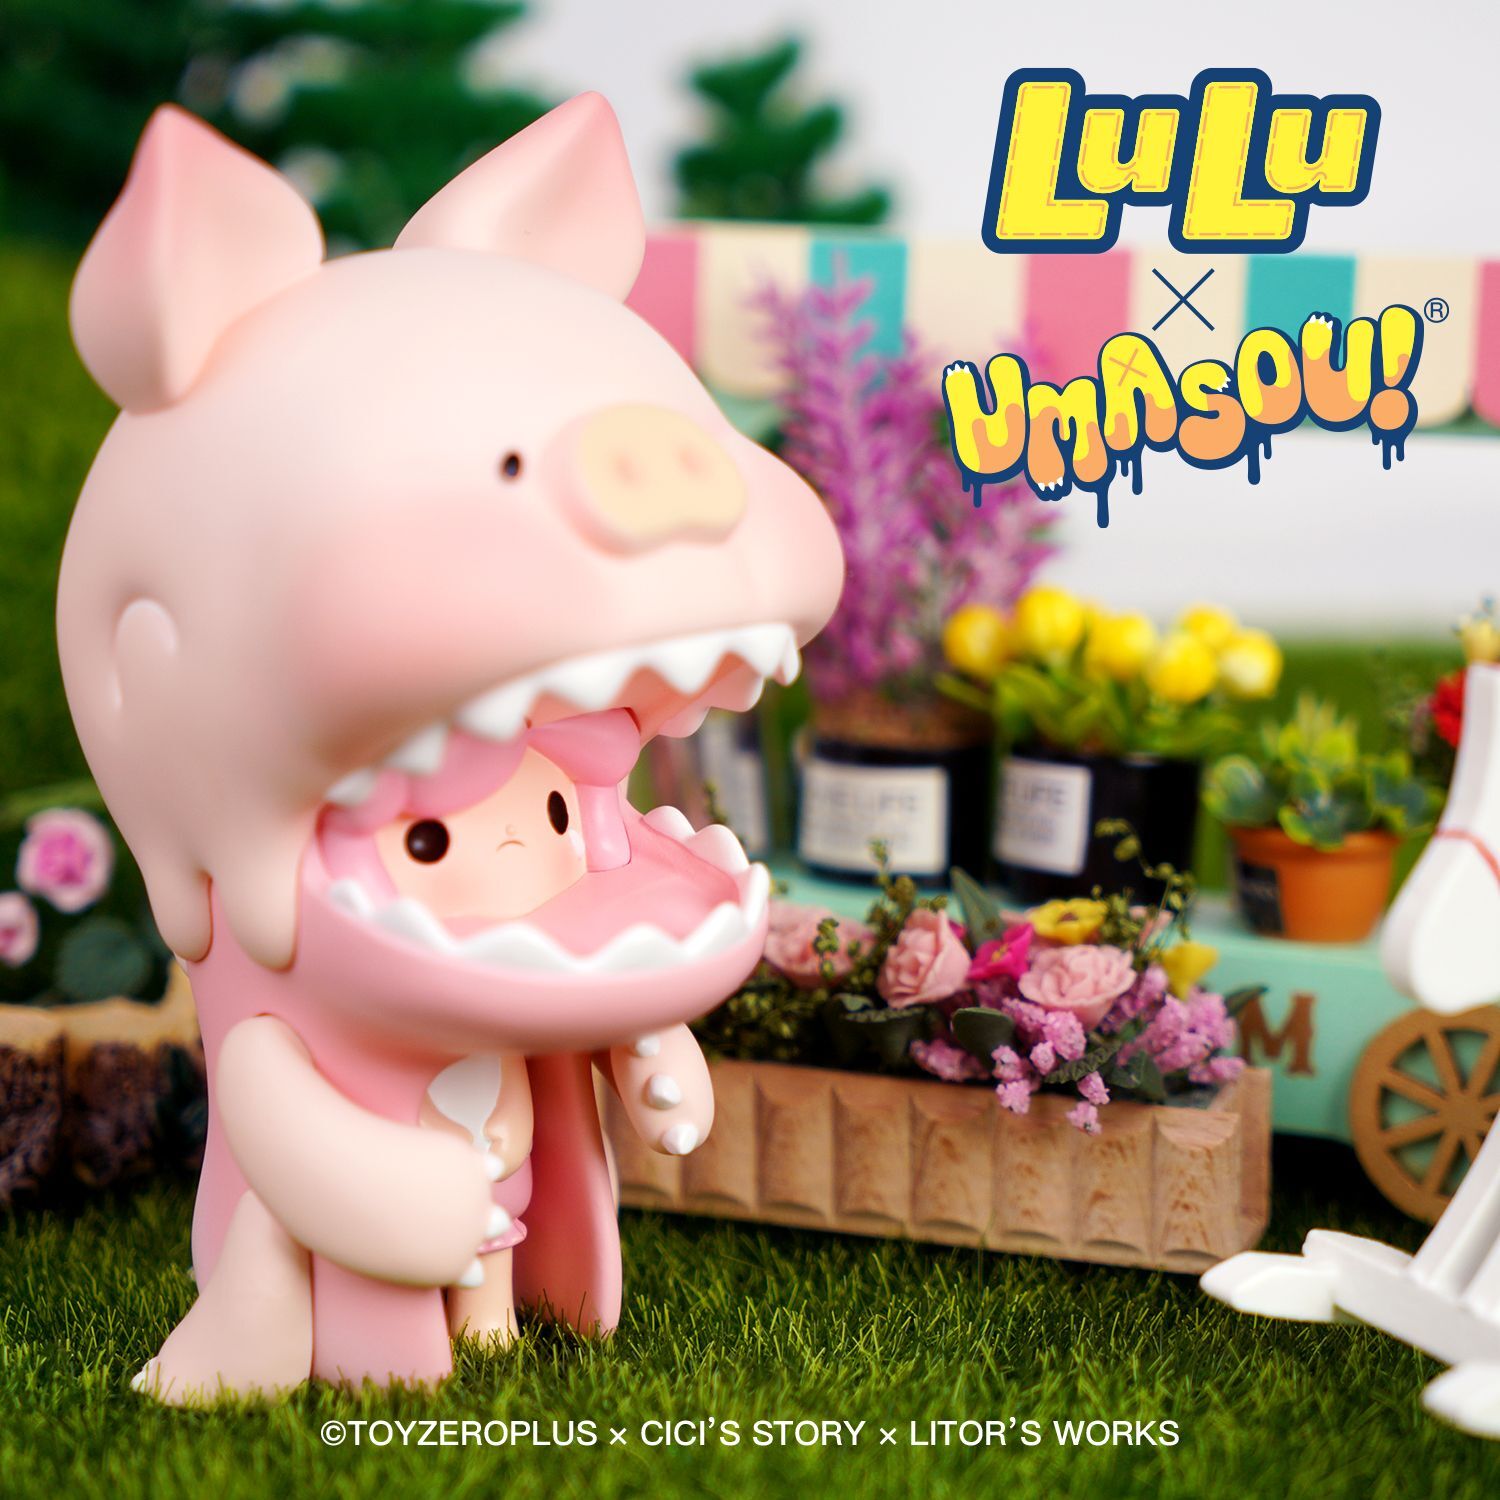 Lulu x Umasou! Diaper Art Toy Figure by Litor's Work x TOYZEROPLUS x Cici's Story